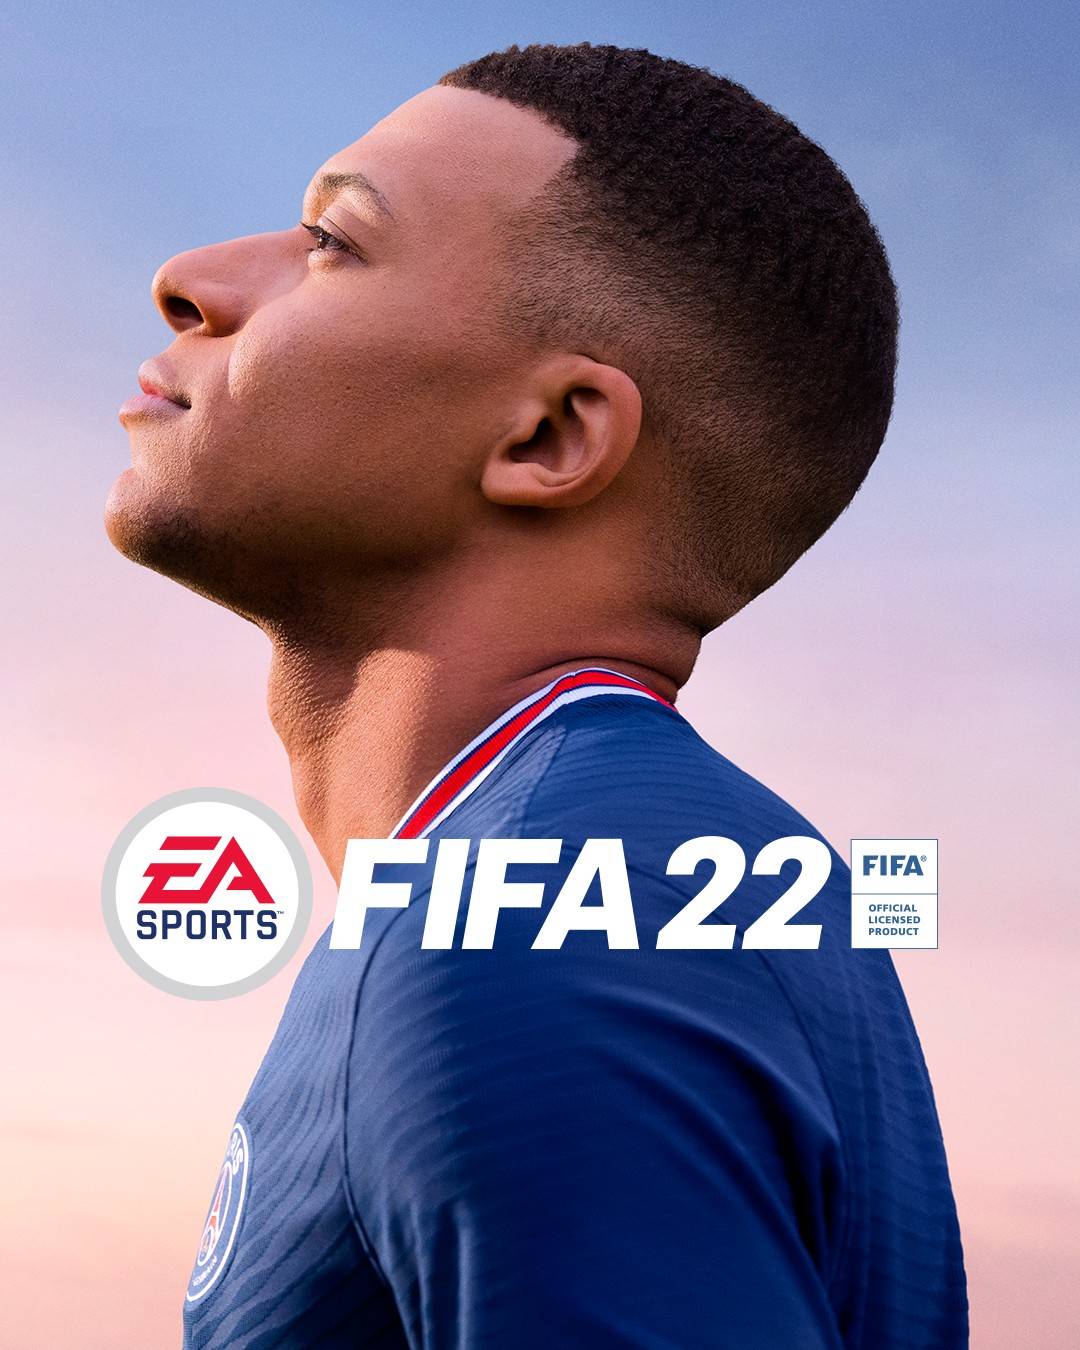 Kylian Mbappé estará en la portada de FIFA 22 2